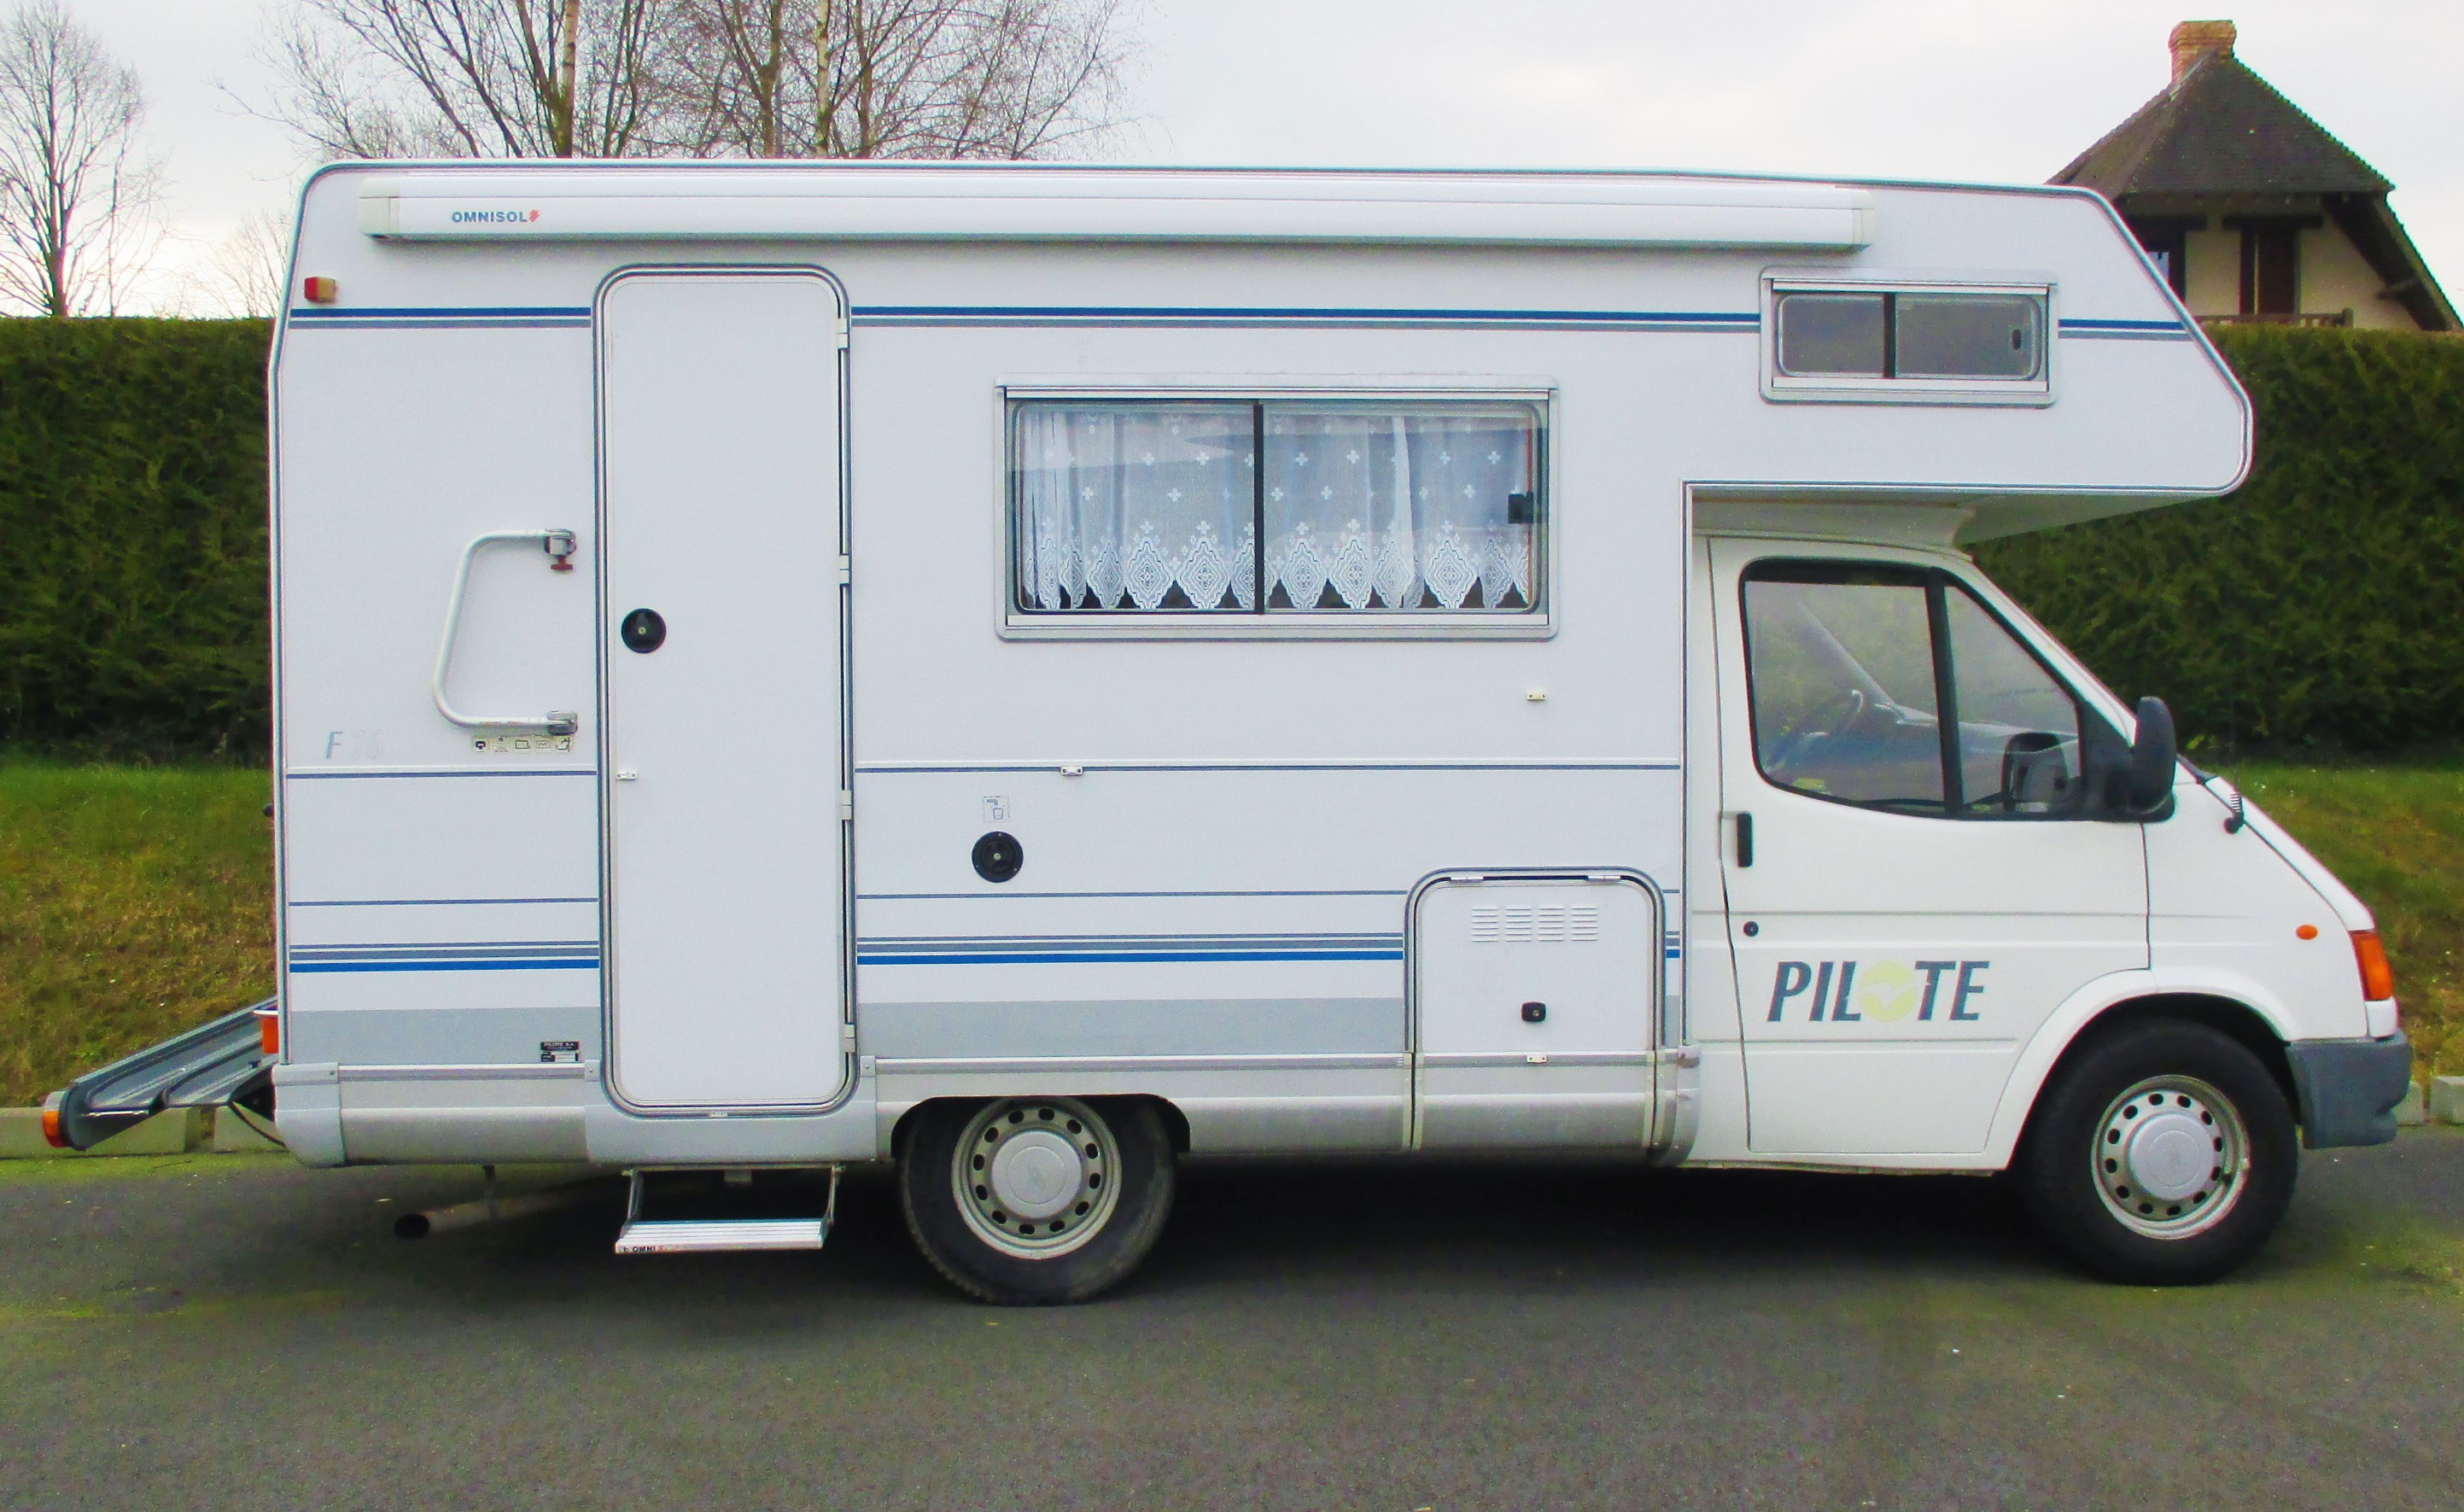 pilote first 16 occasion de 1996 - ford - camping car en vente  u00e0 yvetot  seine maritime